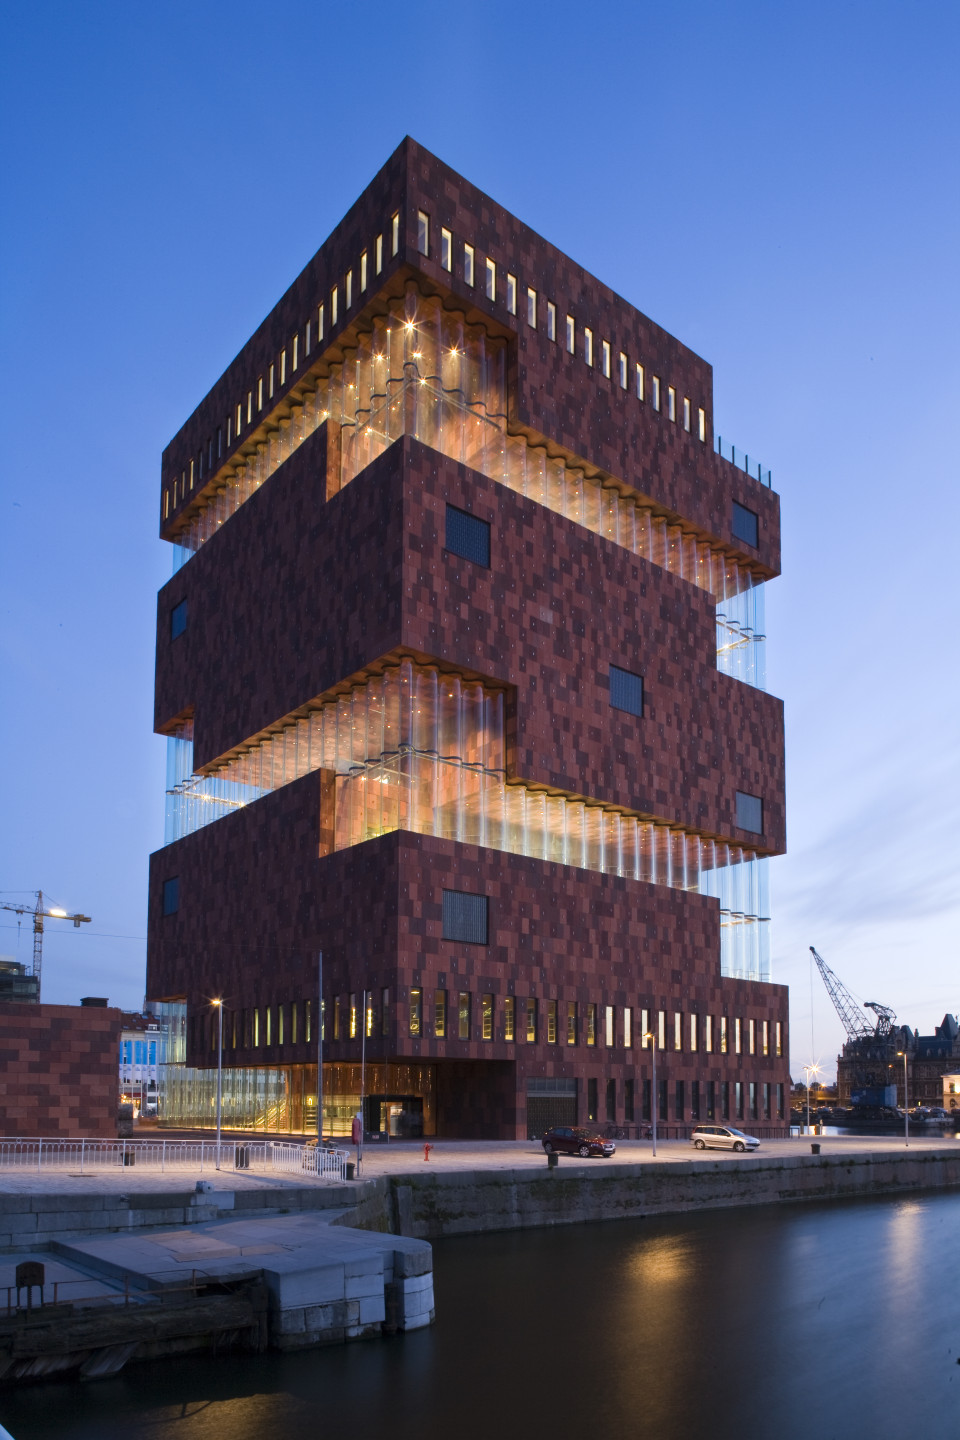 MAS (Museum aan de Stroom) in Antwerp, Belium. Neutelings Riedijk Architecten, 2010. The building was awarded the Steel Construction Prize 2012. Photo: Sarah Blee